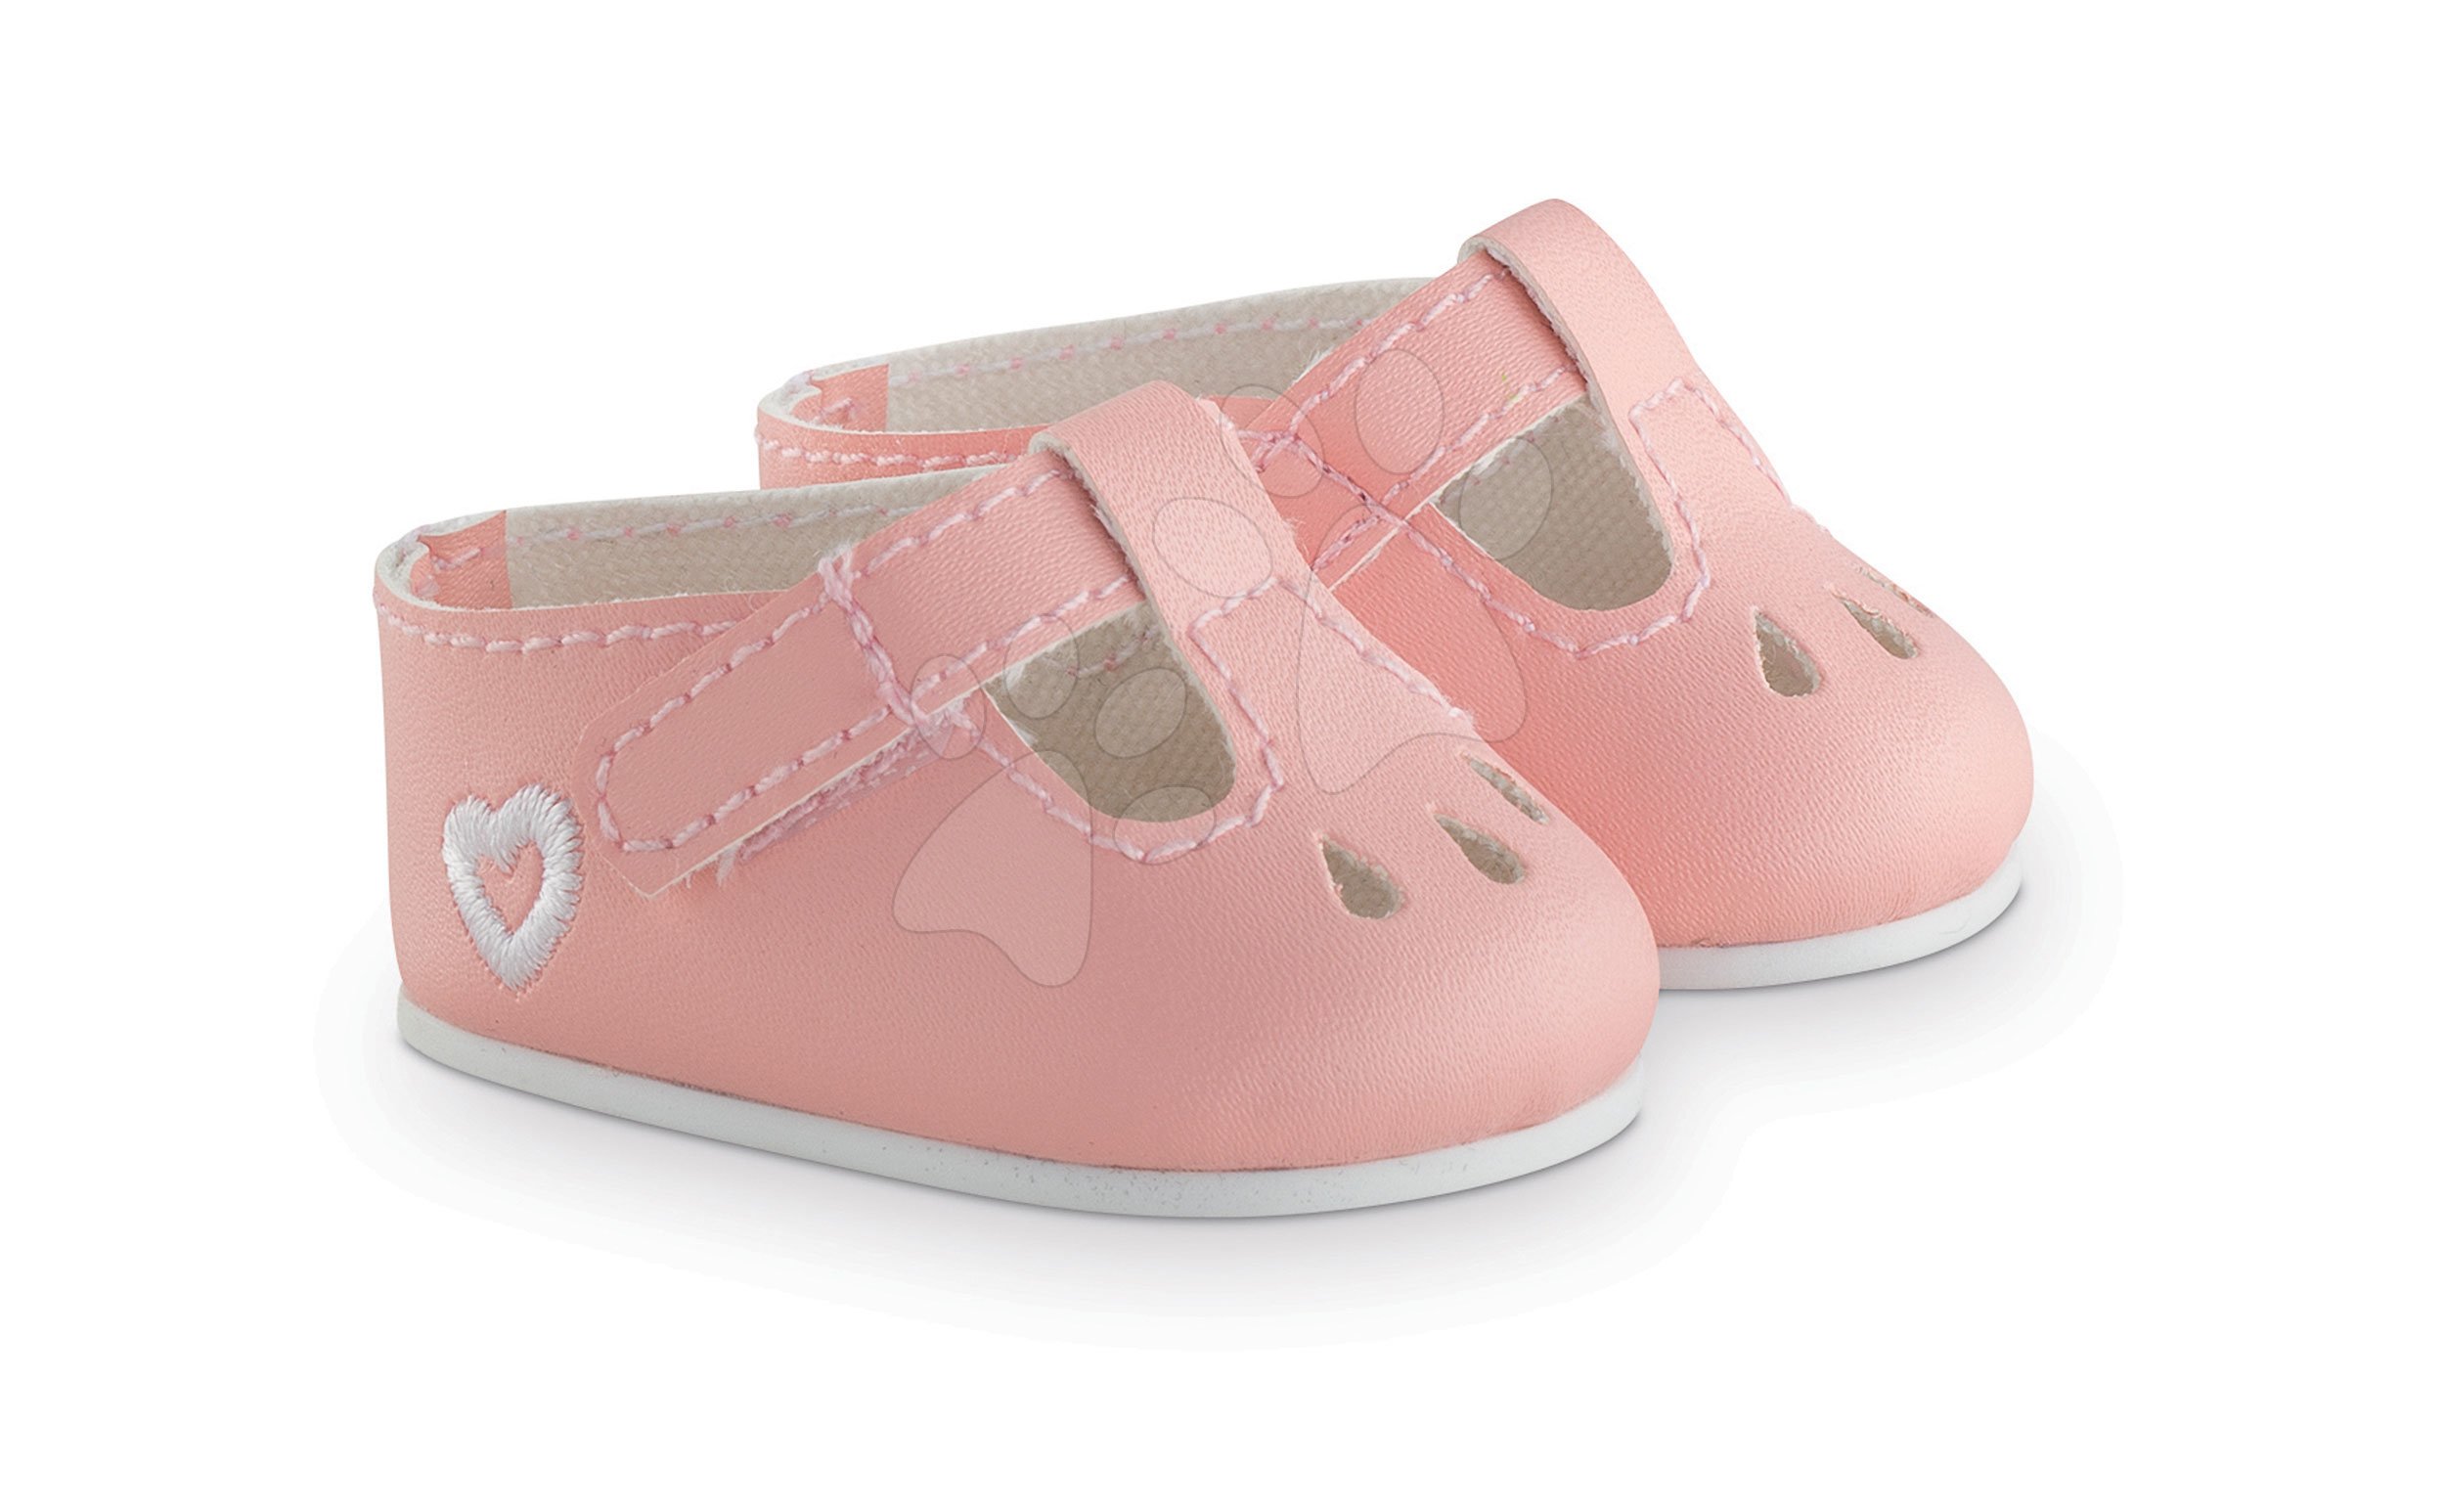 Cipellők Ankle Strap Shoes Pink Mon Grand Poupon Corolle 36 cm játékbabának rózsaszín 3 évtől